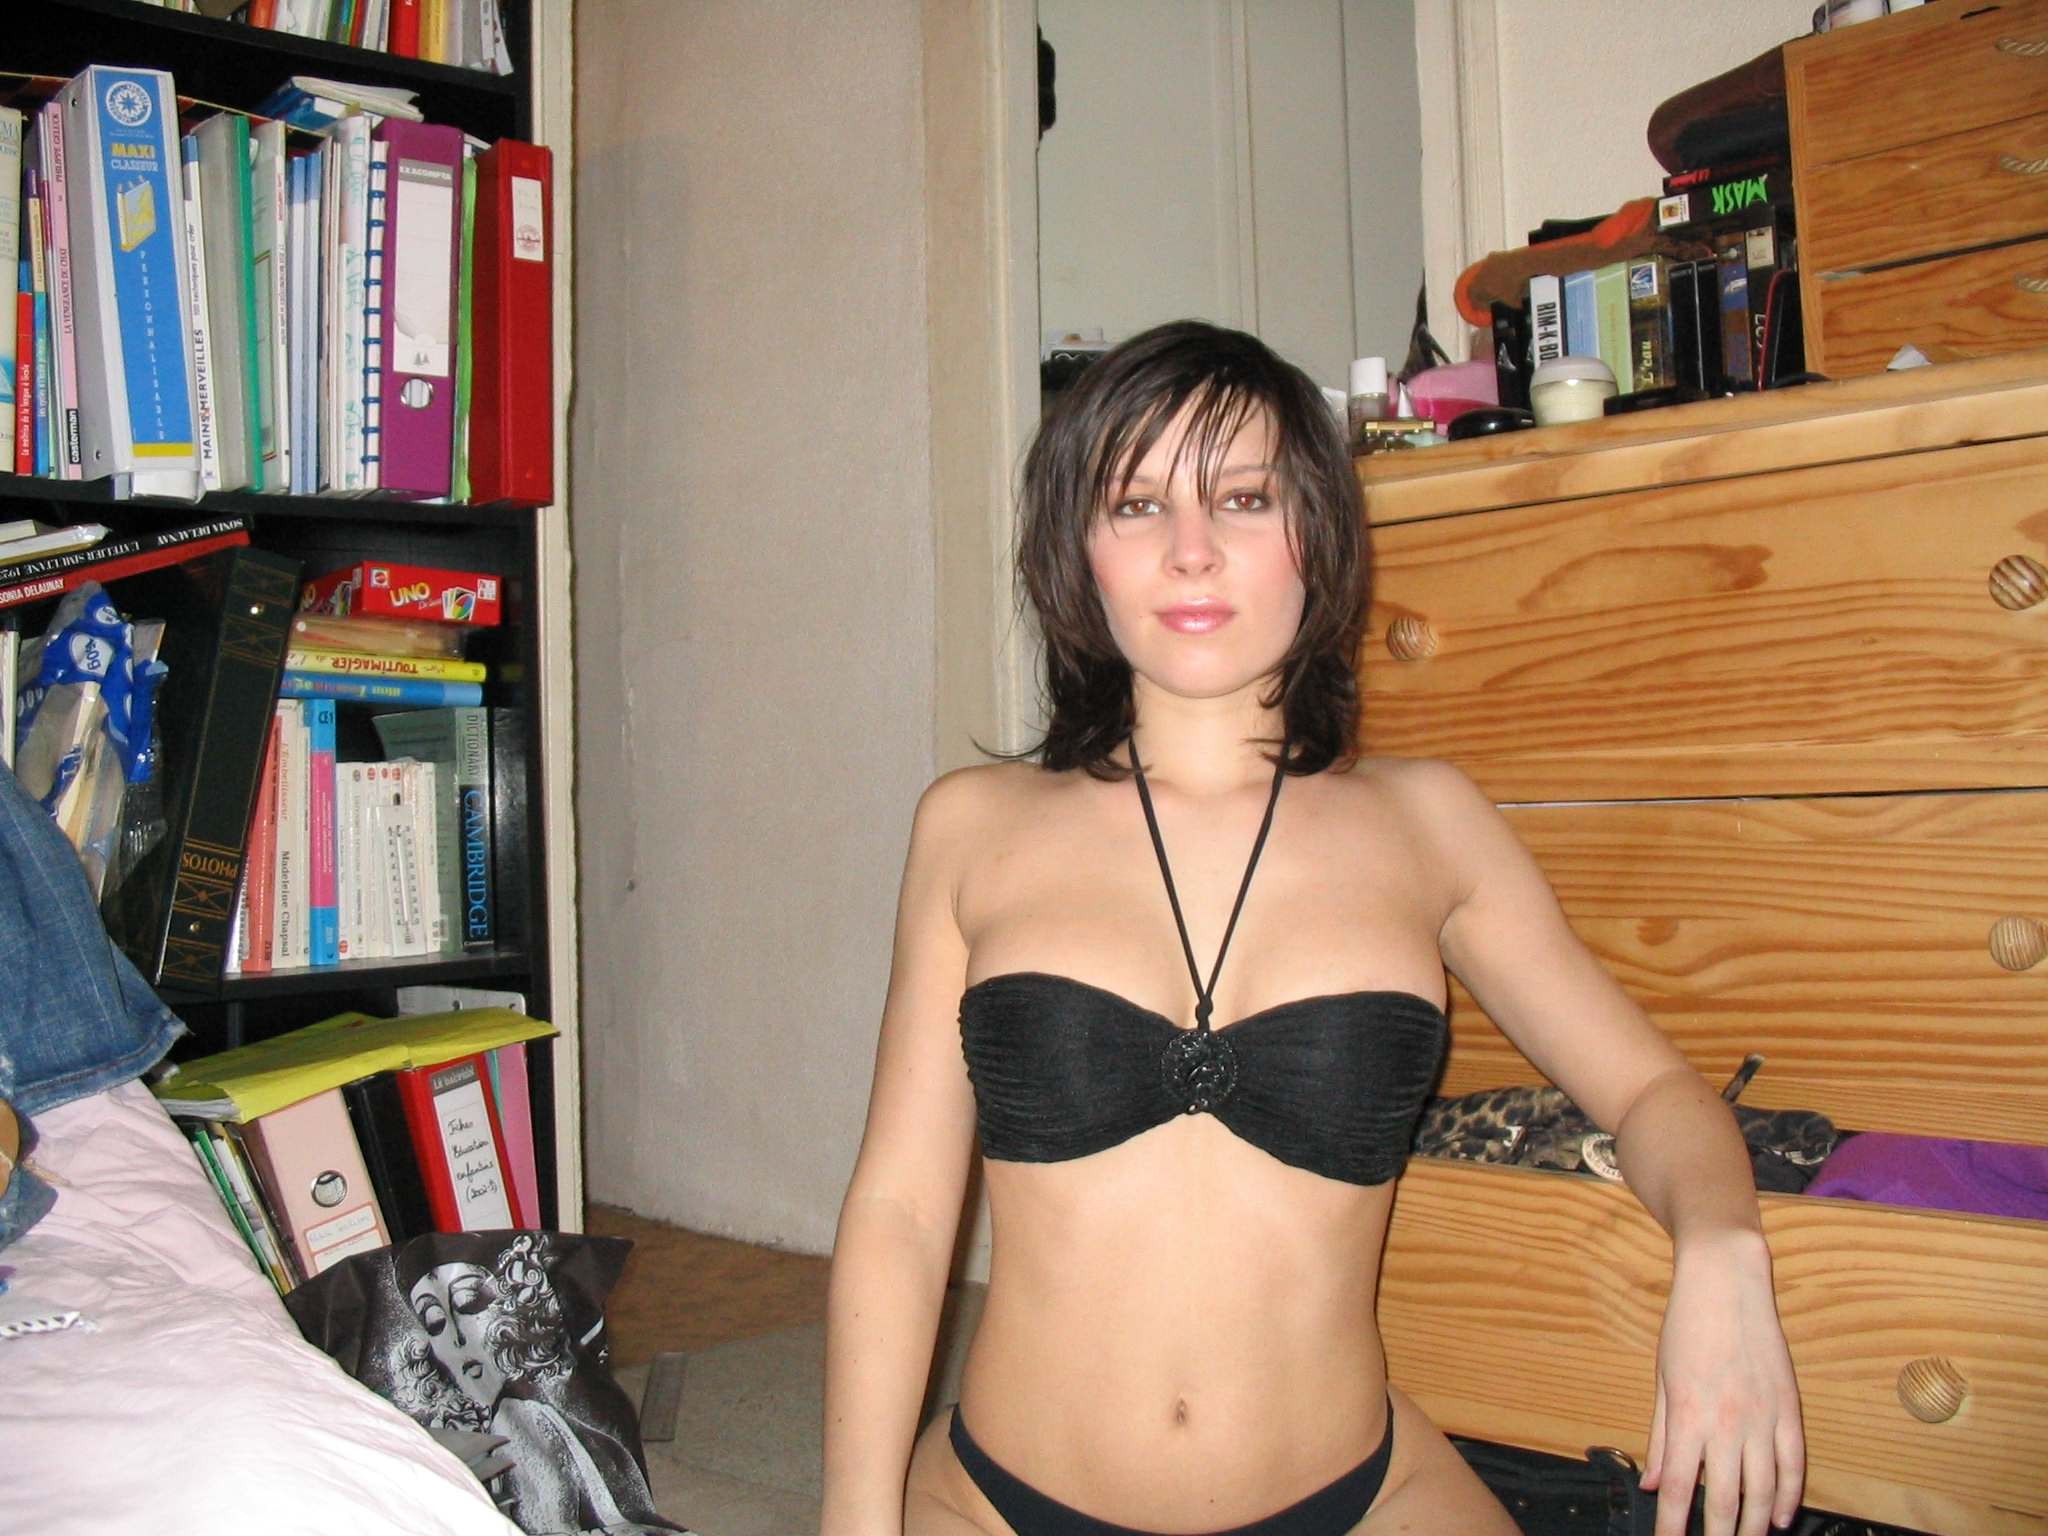 Fotos von einem nackten Mädchen in meinem Zimmer
 #67892572